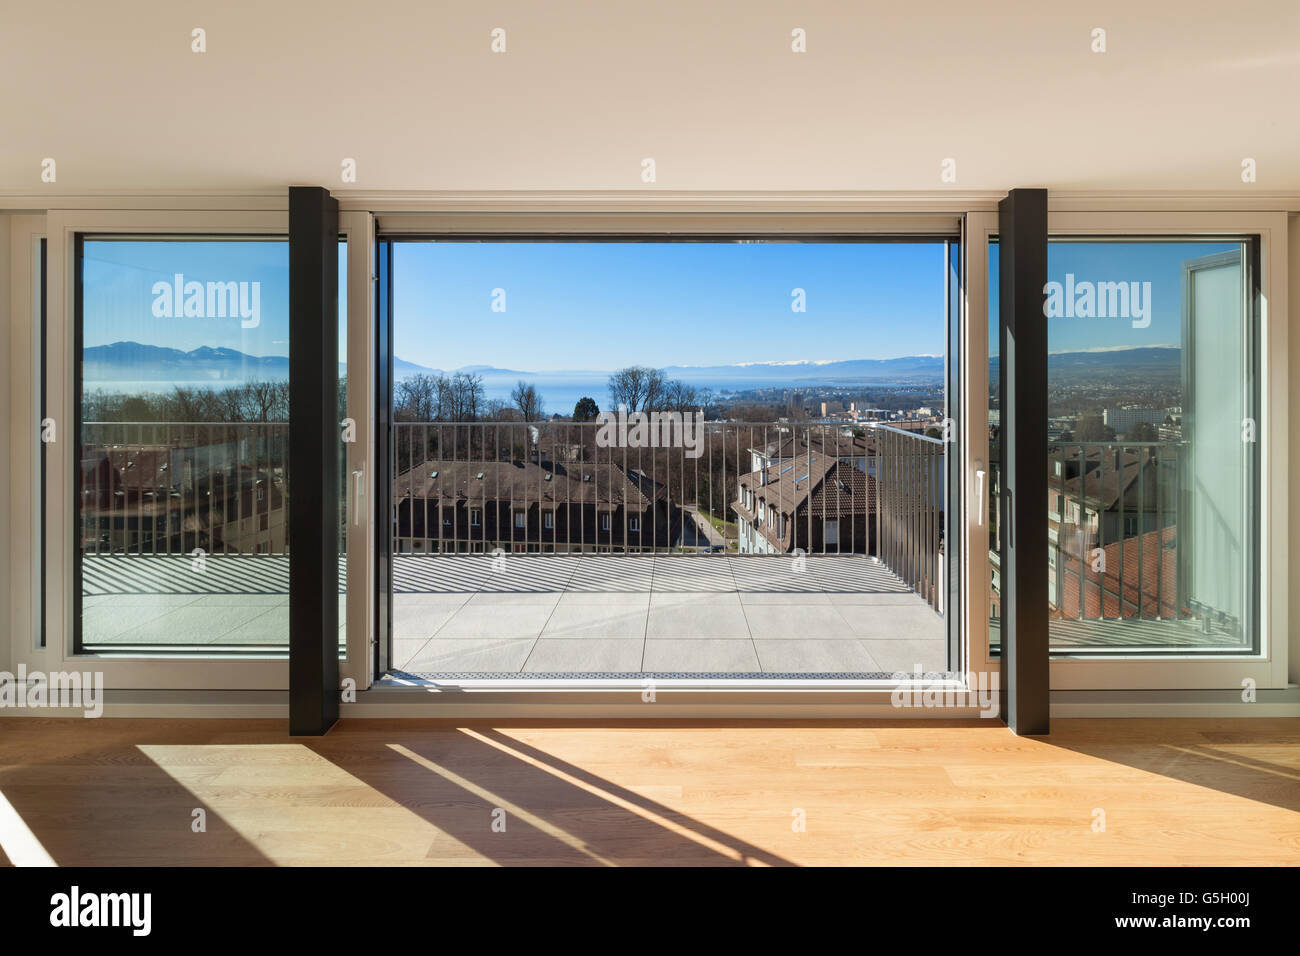 L'intérieur, fenêtre ouverte d'un appartement moderne, vue du salon Banque D'Images